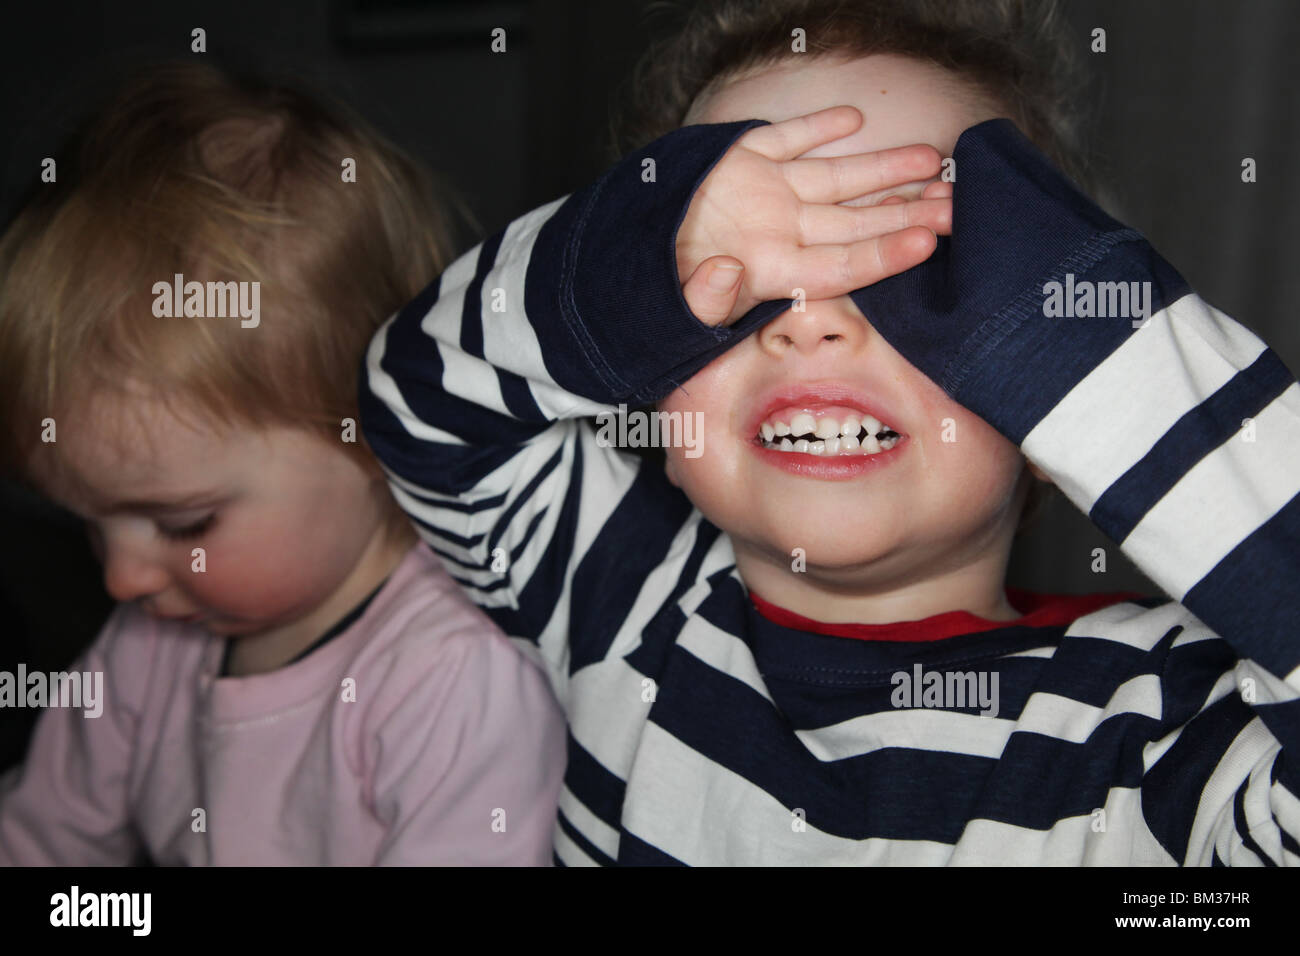 PEEK-A BOO: Ein zweijähriger Junge versteckt sich und sucht einen Blick ein Buh-GUCK-Guck-Guck-Guck-Guck-Versteck-Gesicht-Modell, aufgenommen mit Ringblitz Stockfoto